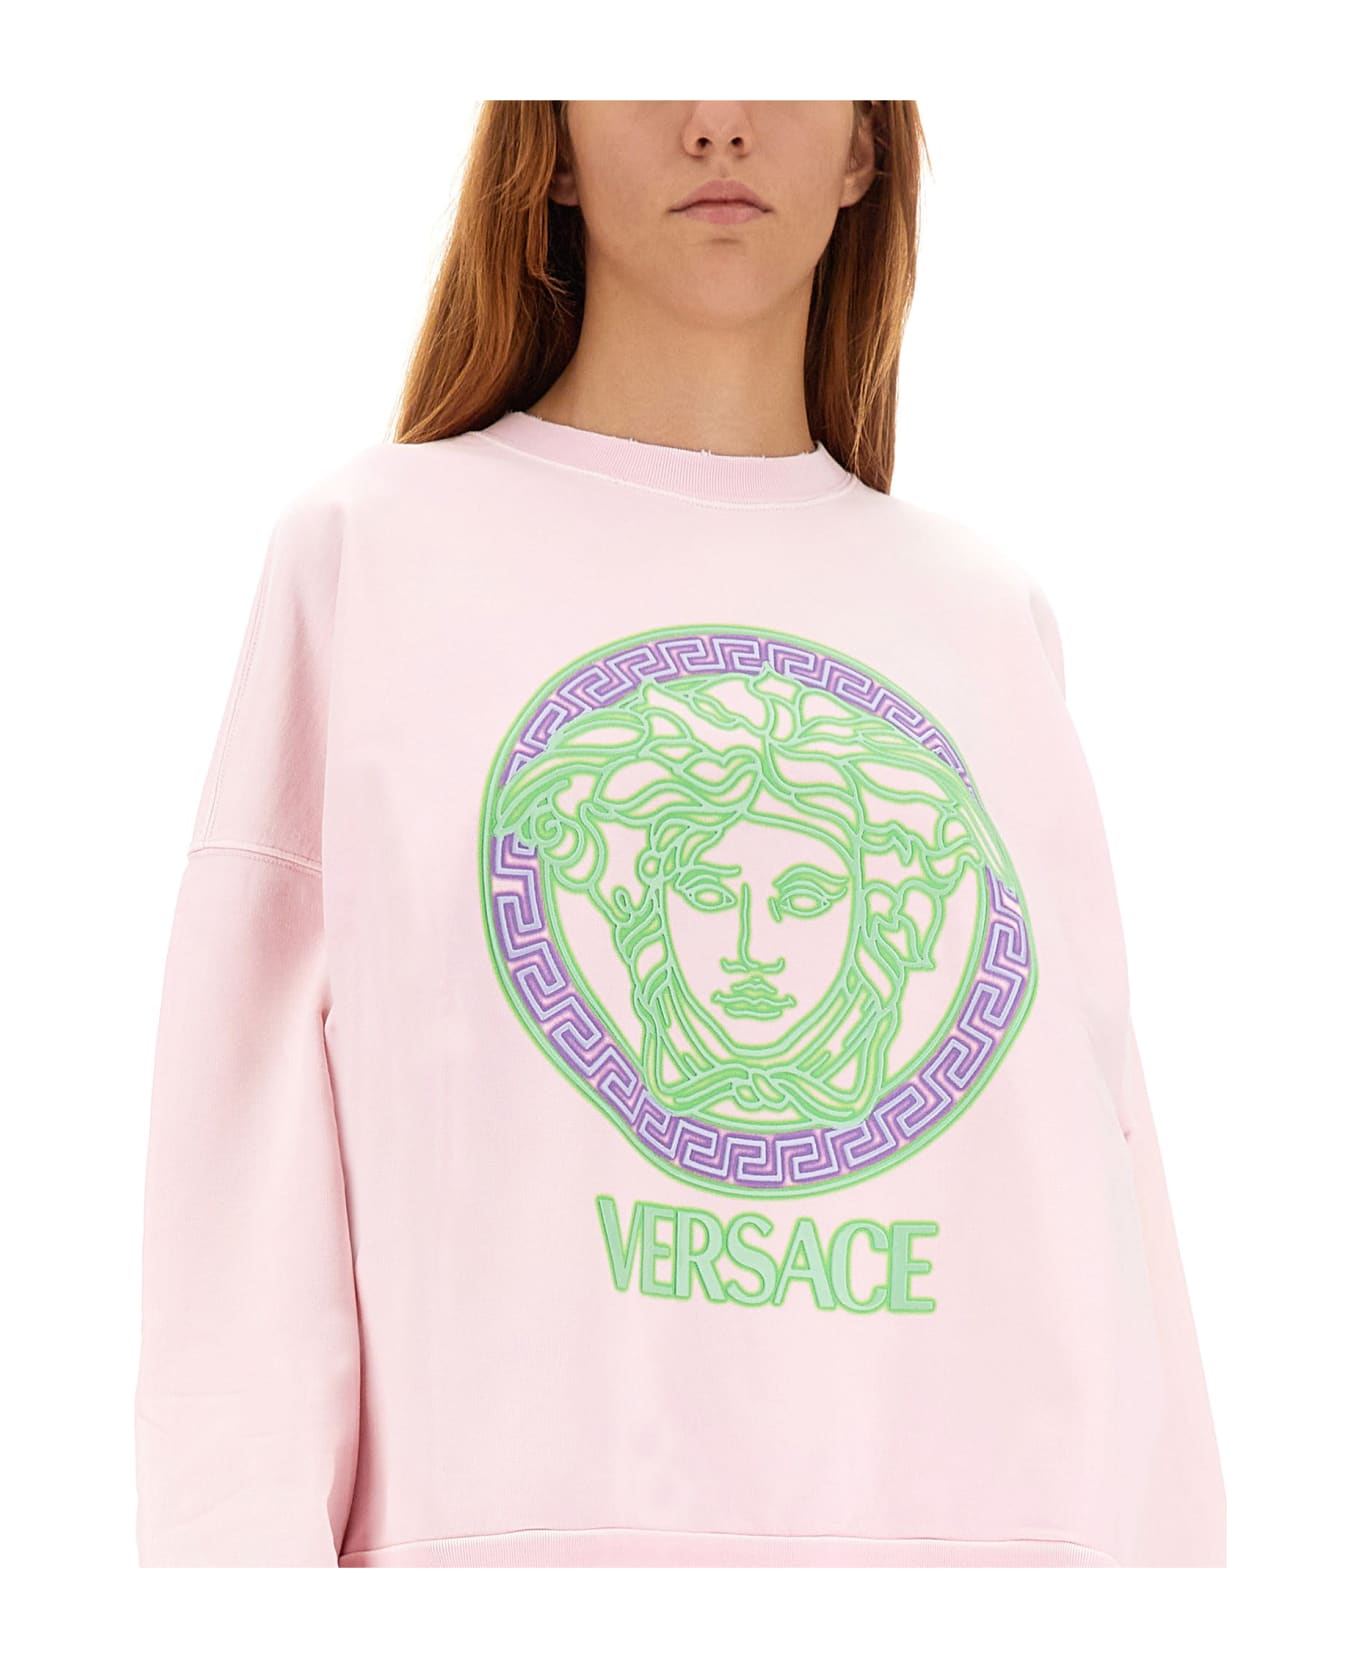 Versace Sweatshirt With Medusa Logo - Baby Pink Neon Green Neon Lavander